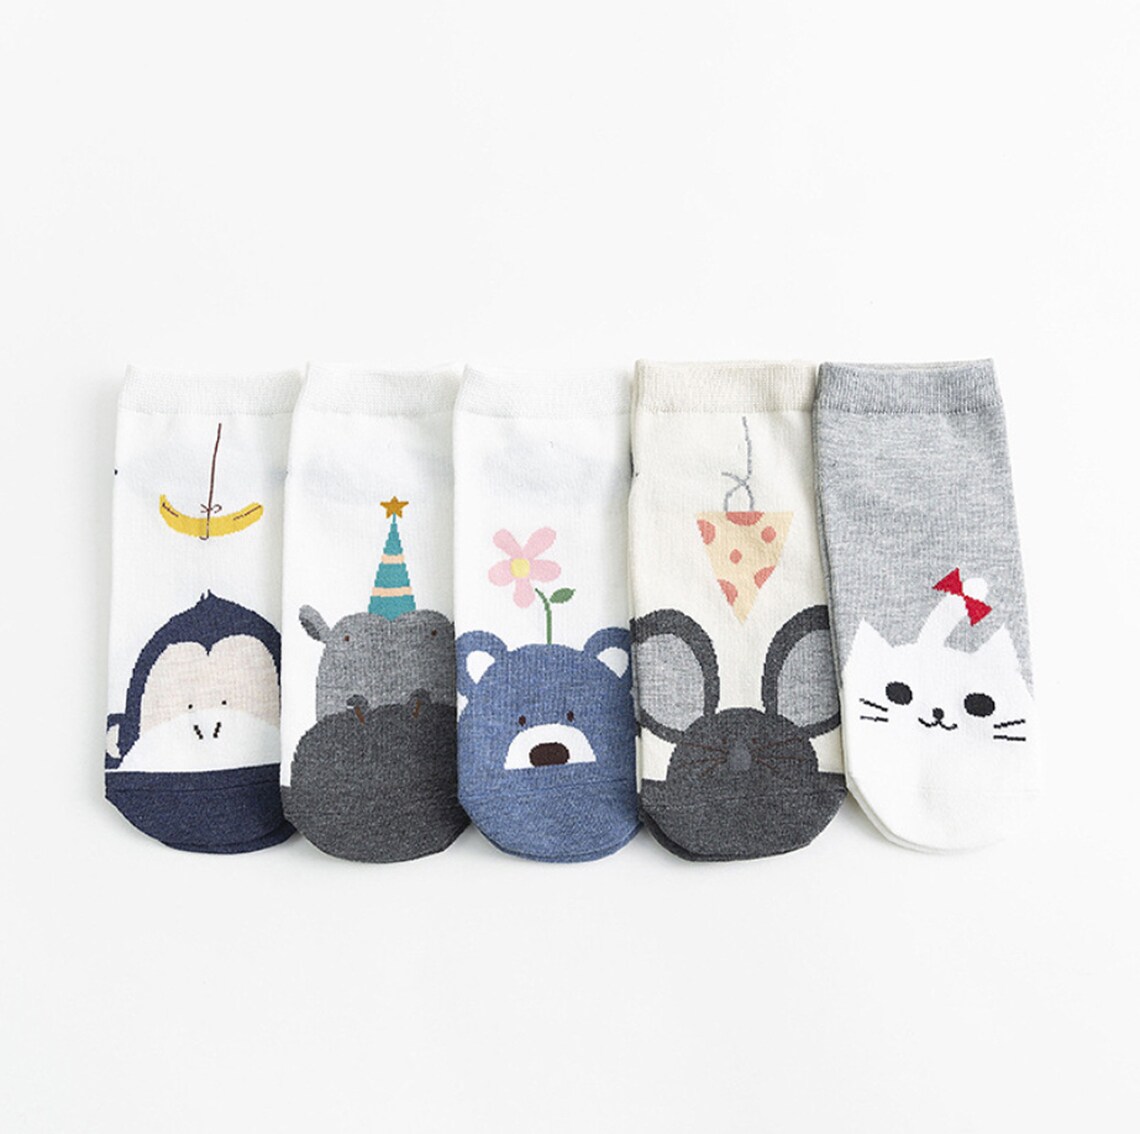 5 pairs Cute Cartoon Animal Socks light weight ankle socks | Etsy